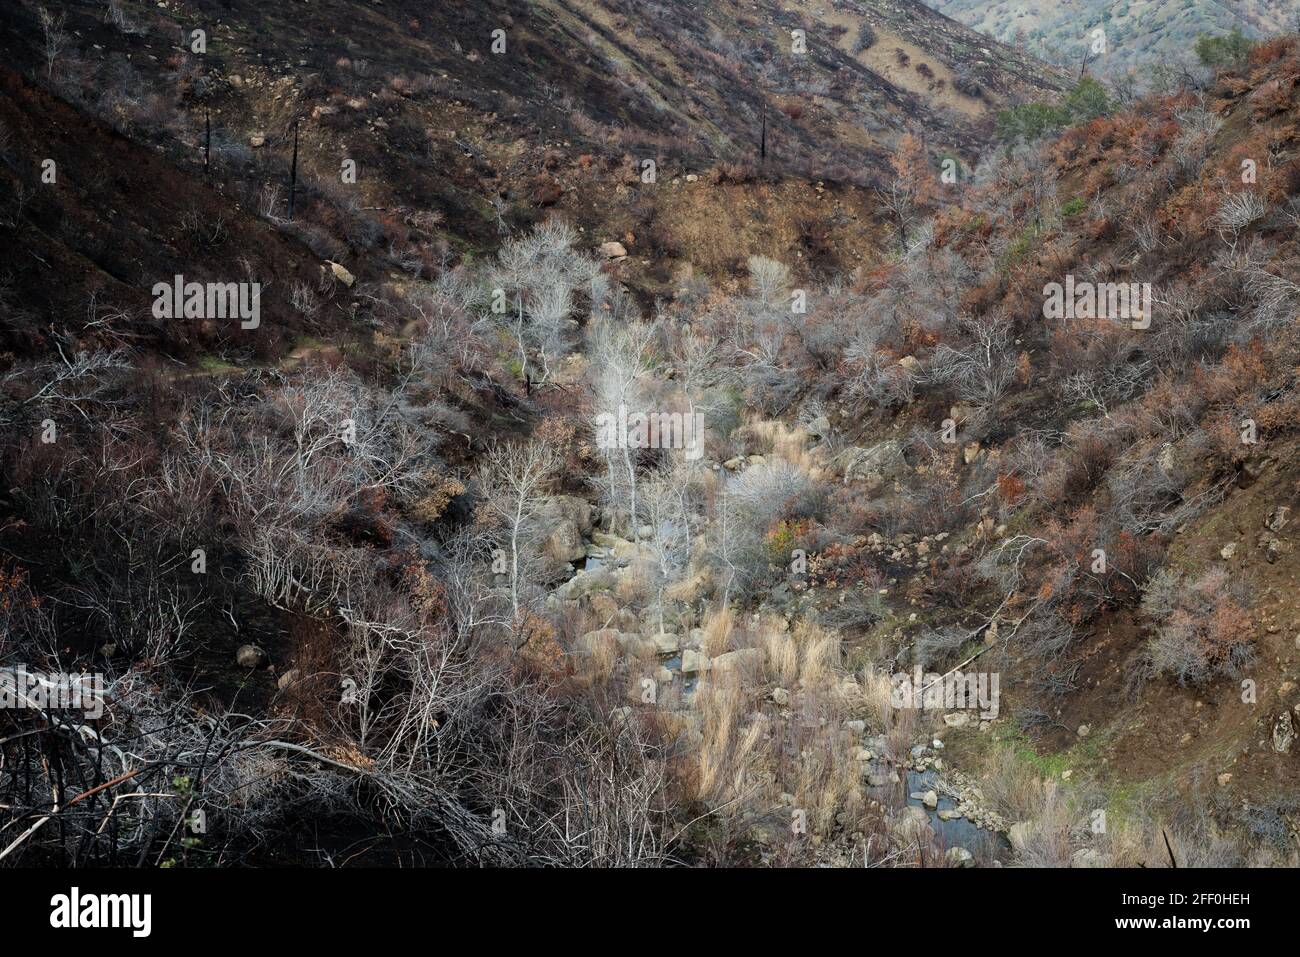 Le bord d'un feu avec des dégâts de feu de forêt noircis d'un côté et la végétation survivante de l'autre, en Californie. Banque D'Images